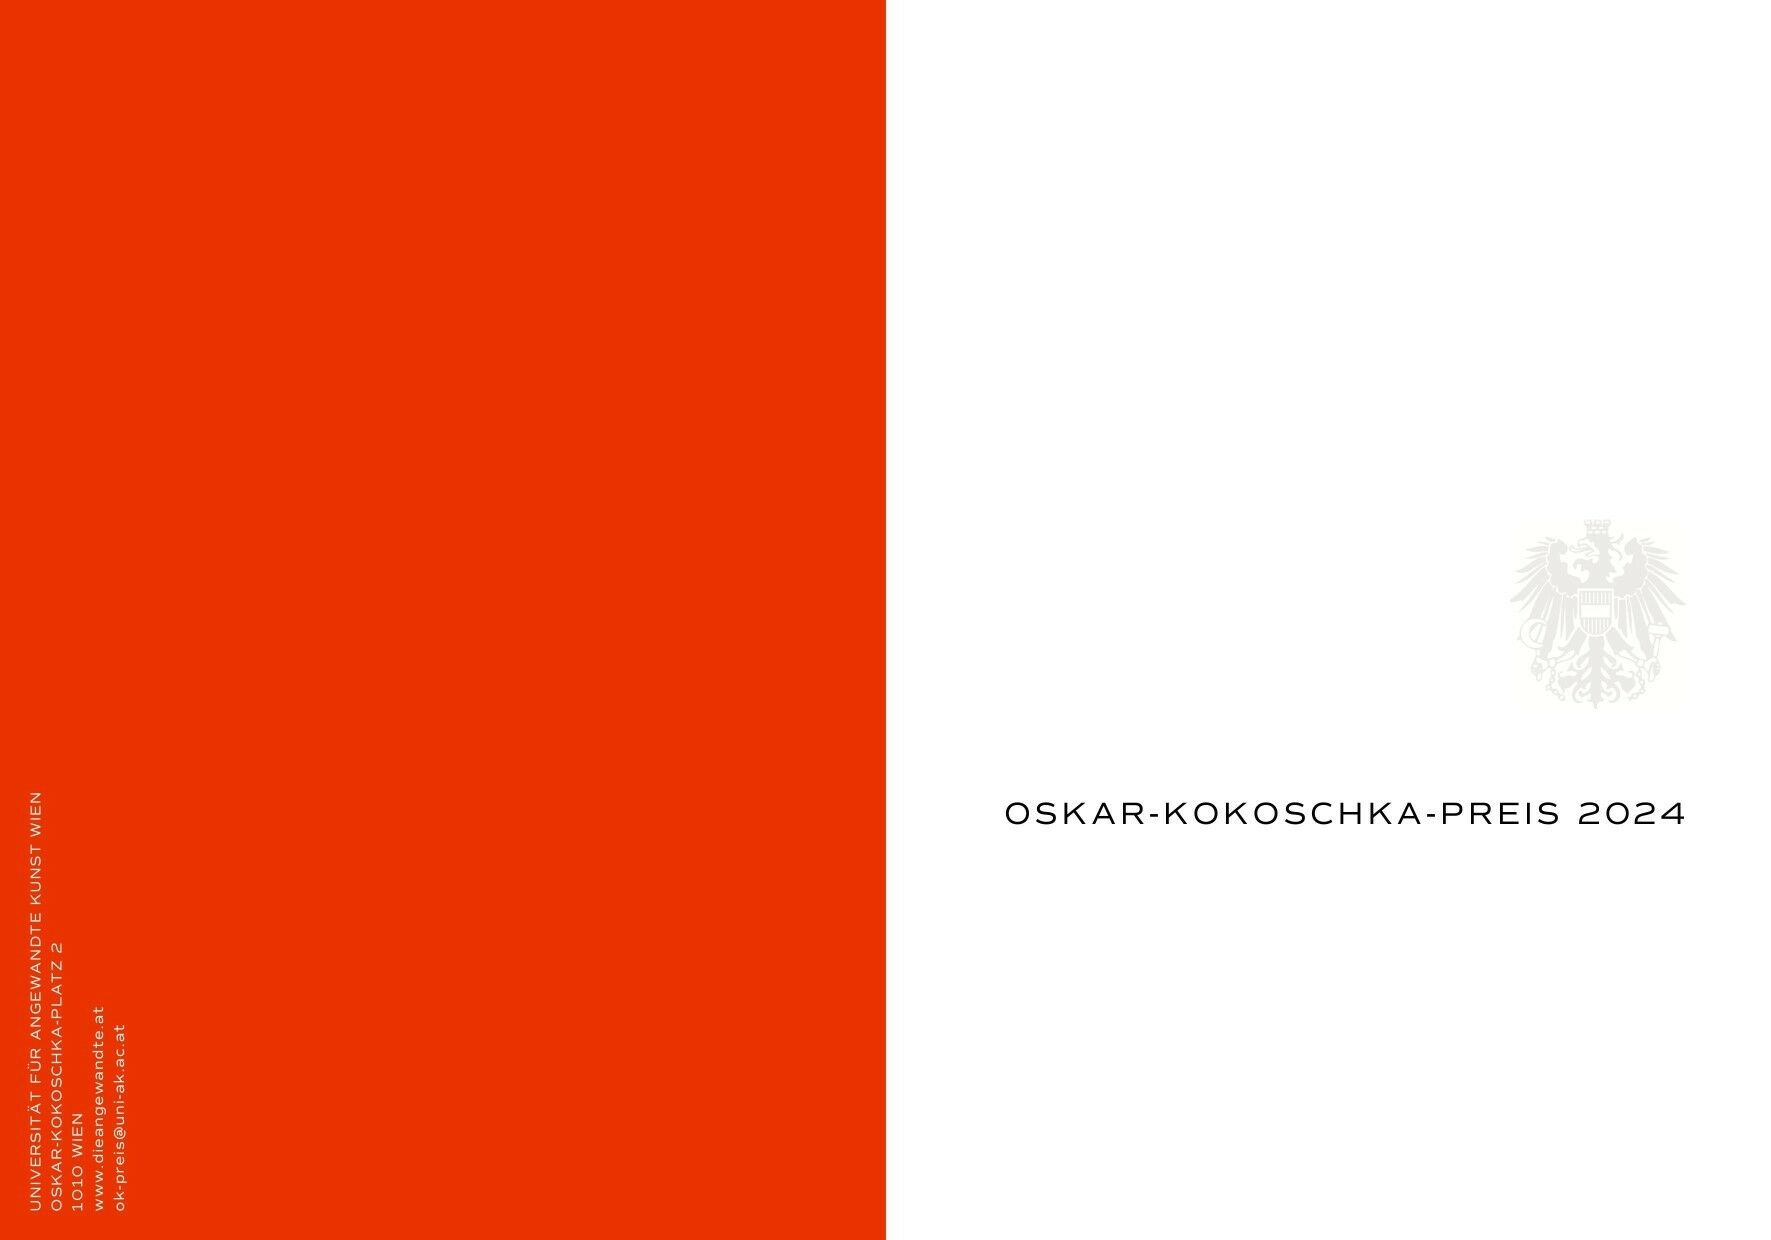 Oskar-Kokoschka-Preis 2024, Universität für angewandte Kunst Wien